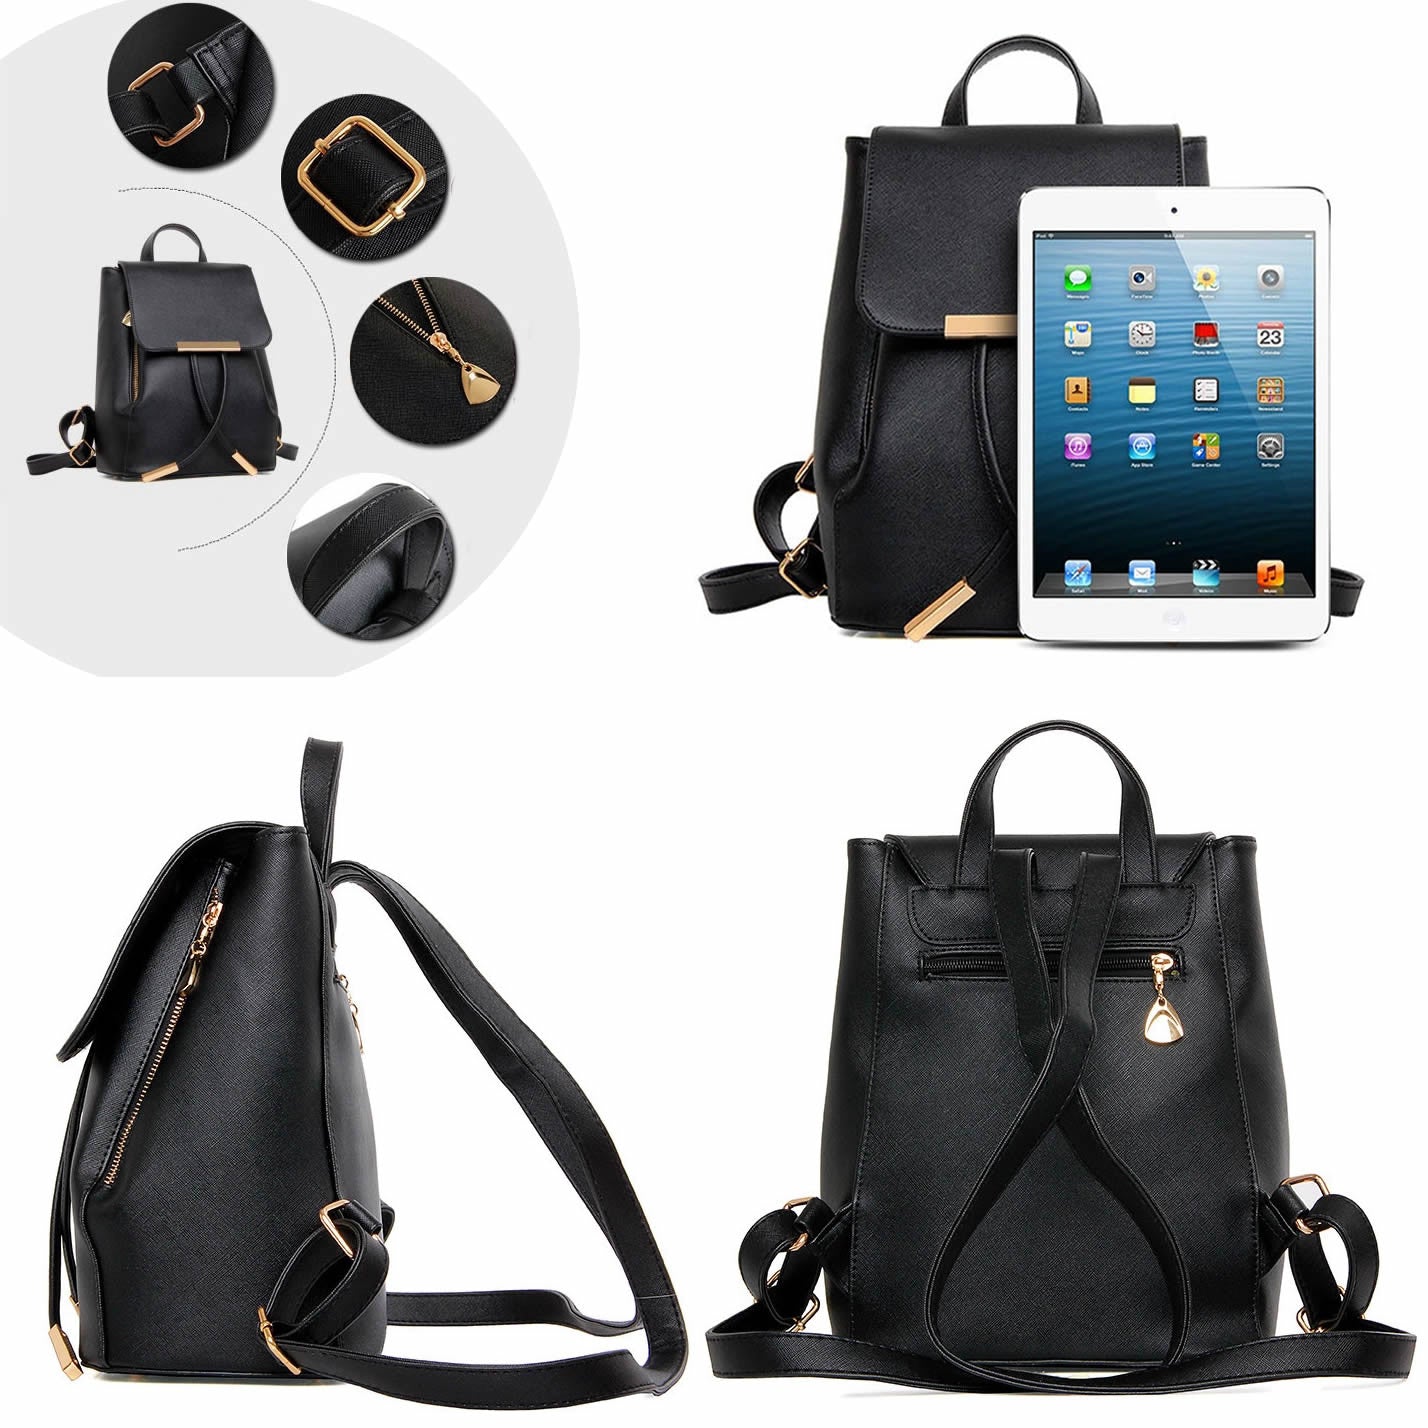 Katalina Classic Handbag Convertible To Backpack by VistaShops